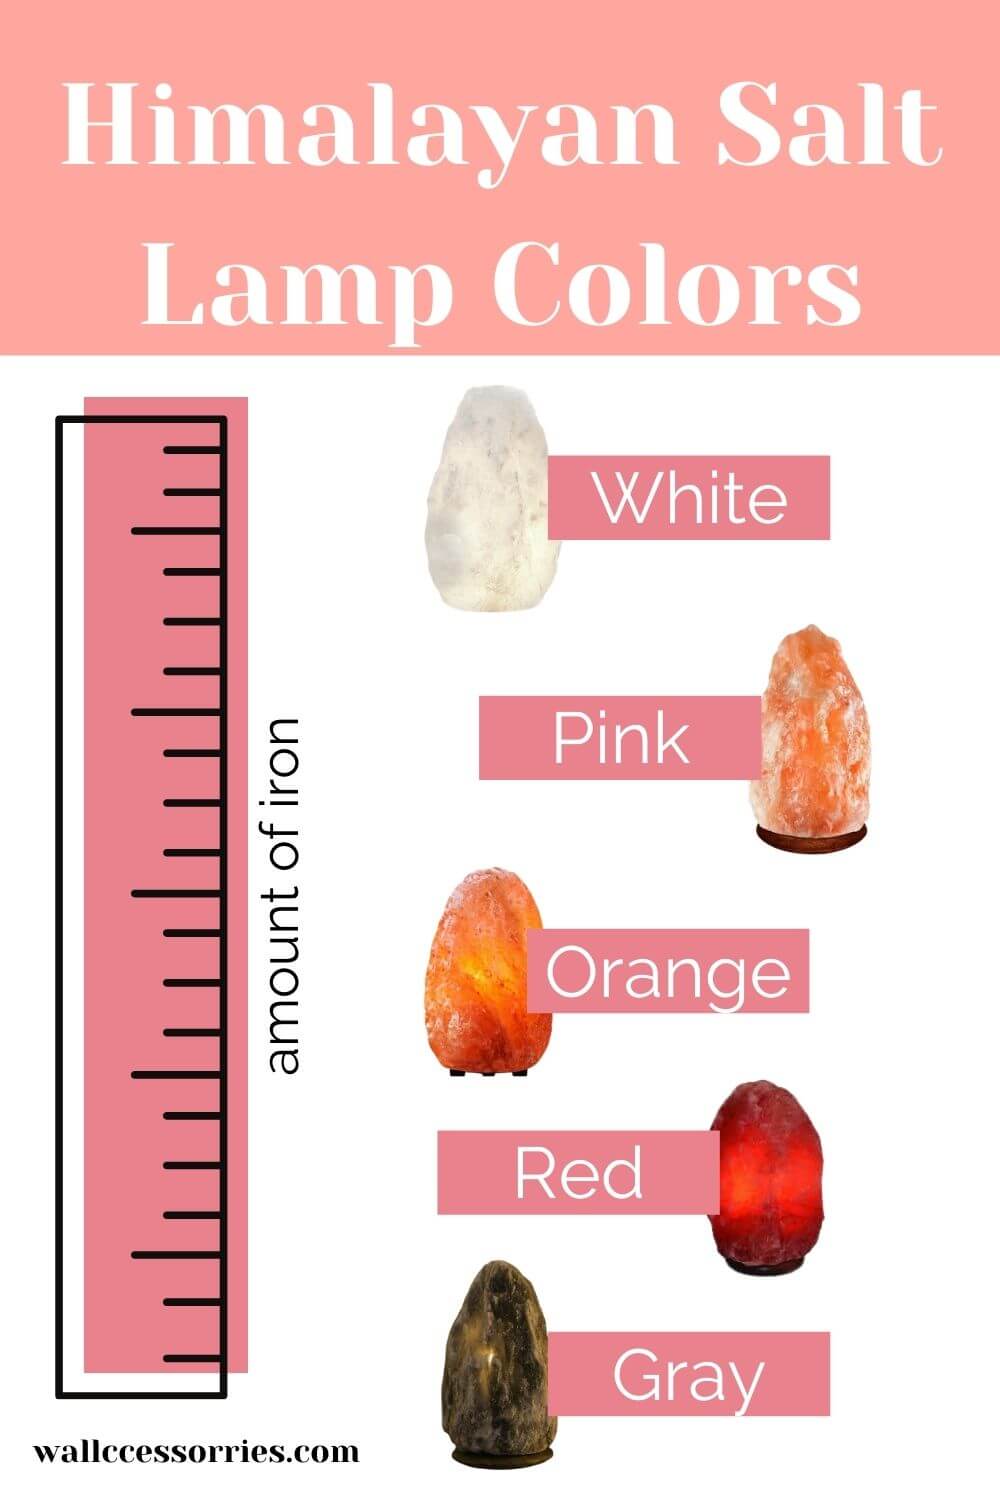 Himalayan salt lamp colors infograph